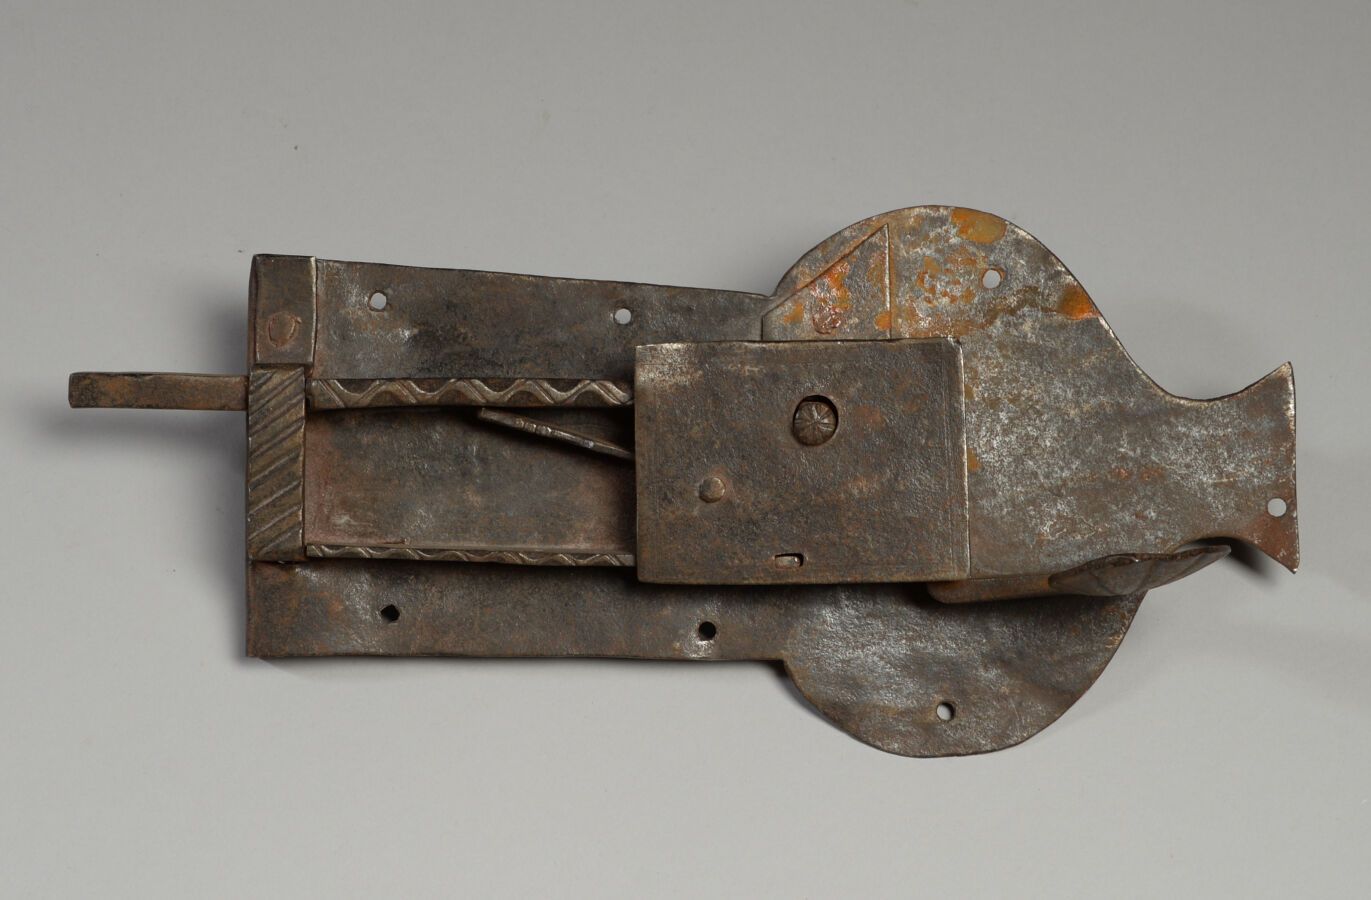 Null 锻铁门闩锁。
18世纪
高14 - 长31厘米